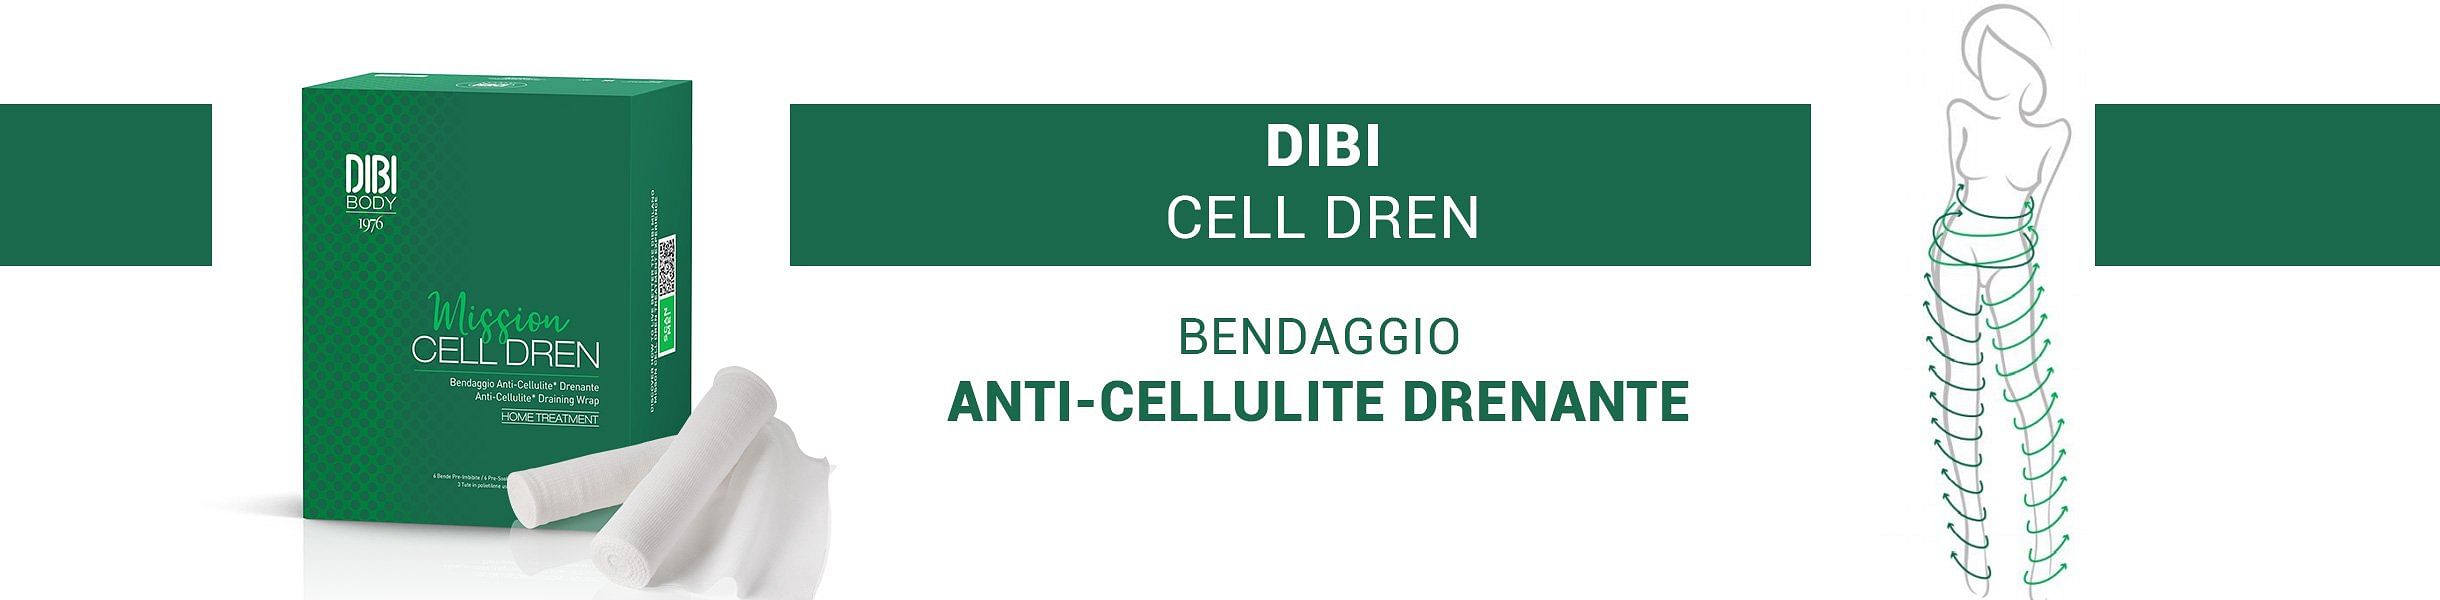 MISSION CELL E SLIM DREN - BENDAGGI